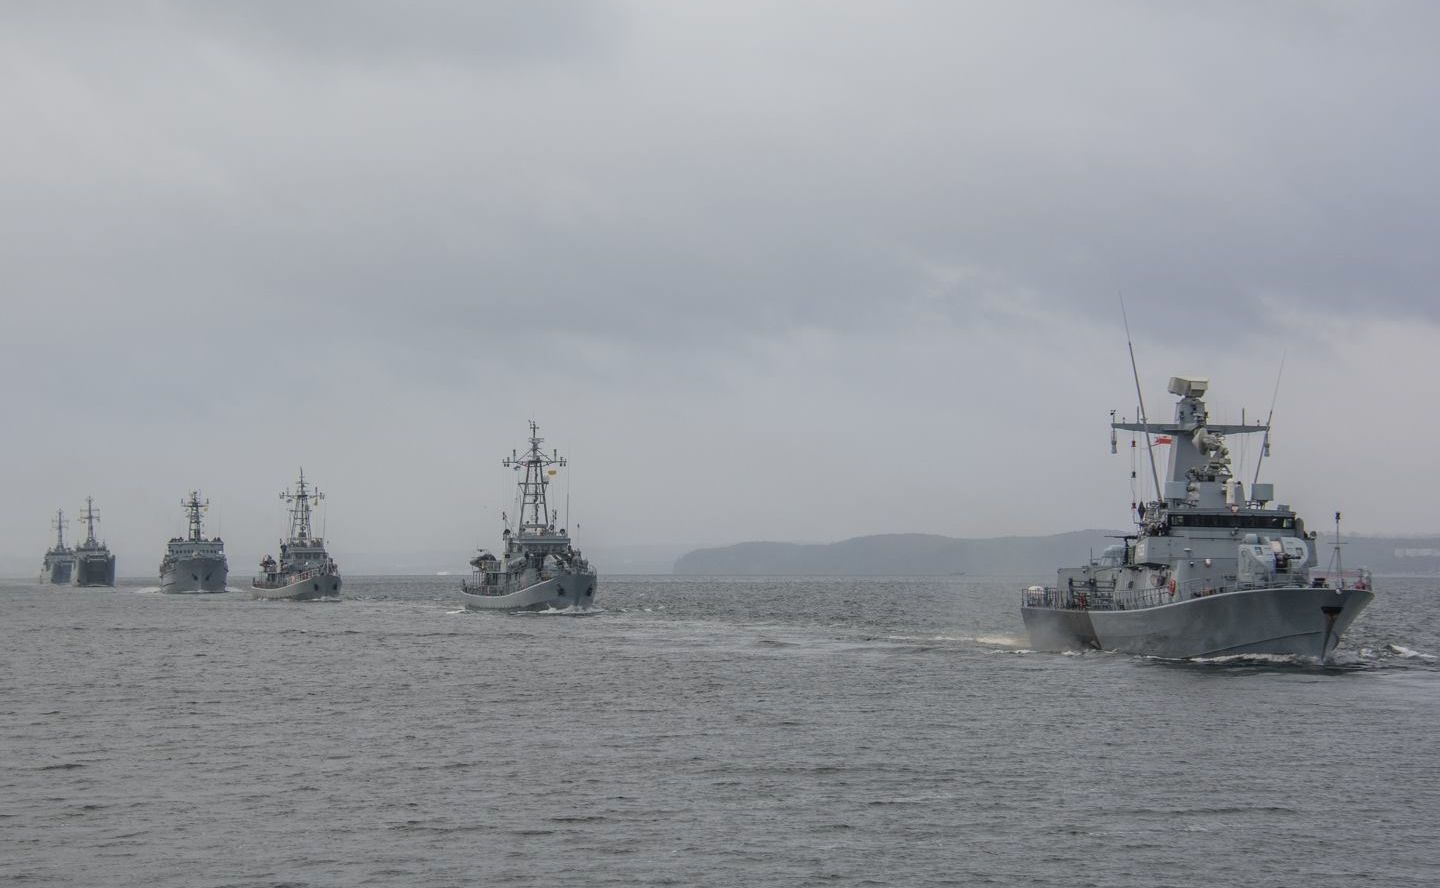 MON wraca nad morze i do 2035 r. planuje wydać 60 mld zł na nowe okręty  wojenne - Forsal.pl